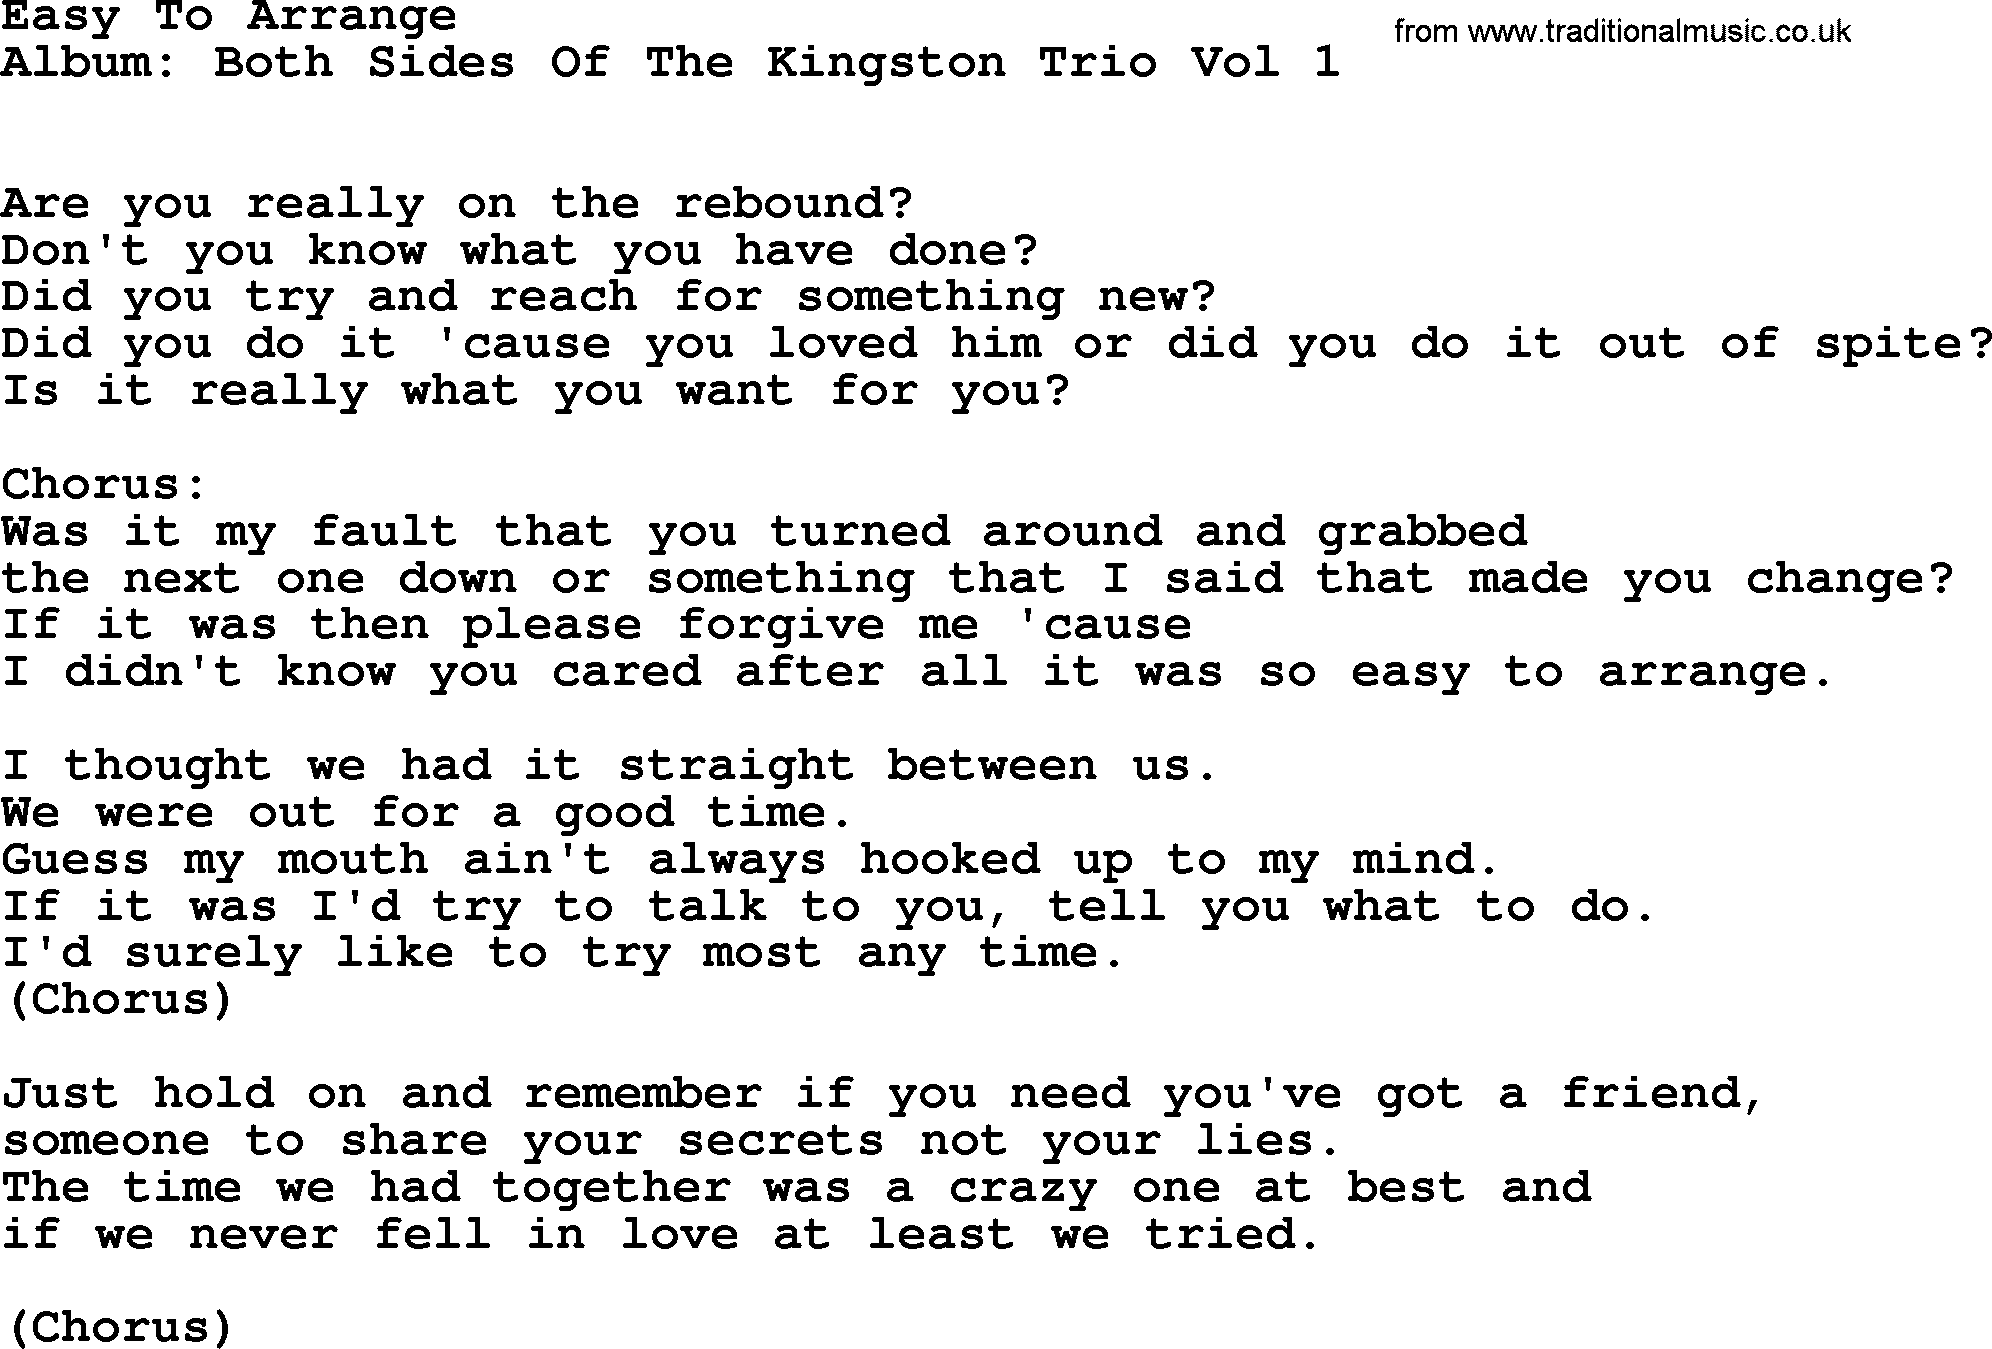 Kingston Trio song Easy To Arrange, lyrics